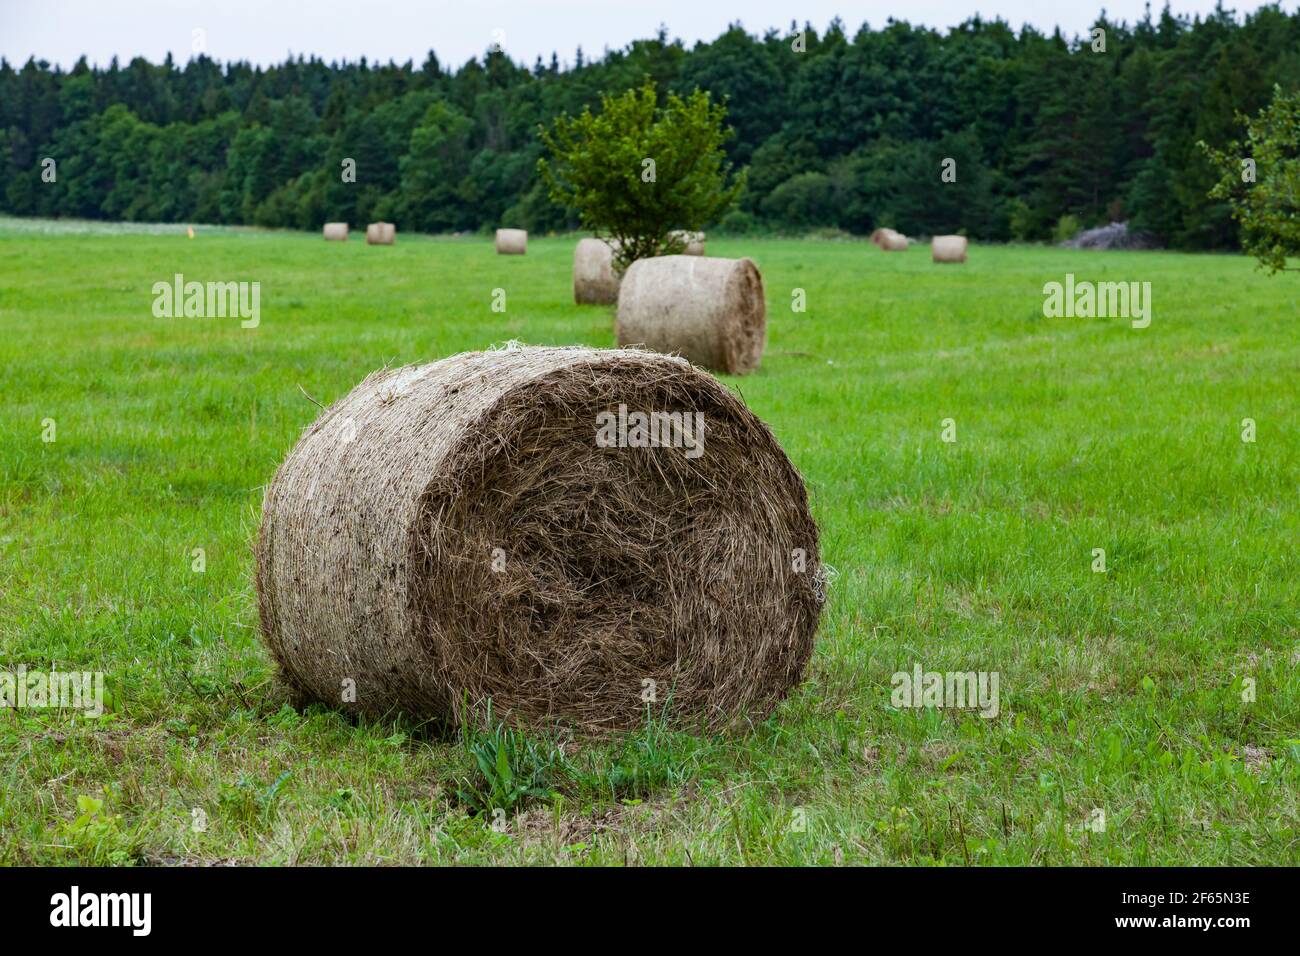 Le foin roule sur le champ de l'herbe coupée. Paysage rural estonien. Île Saarema. Banque D'Images